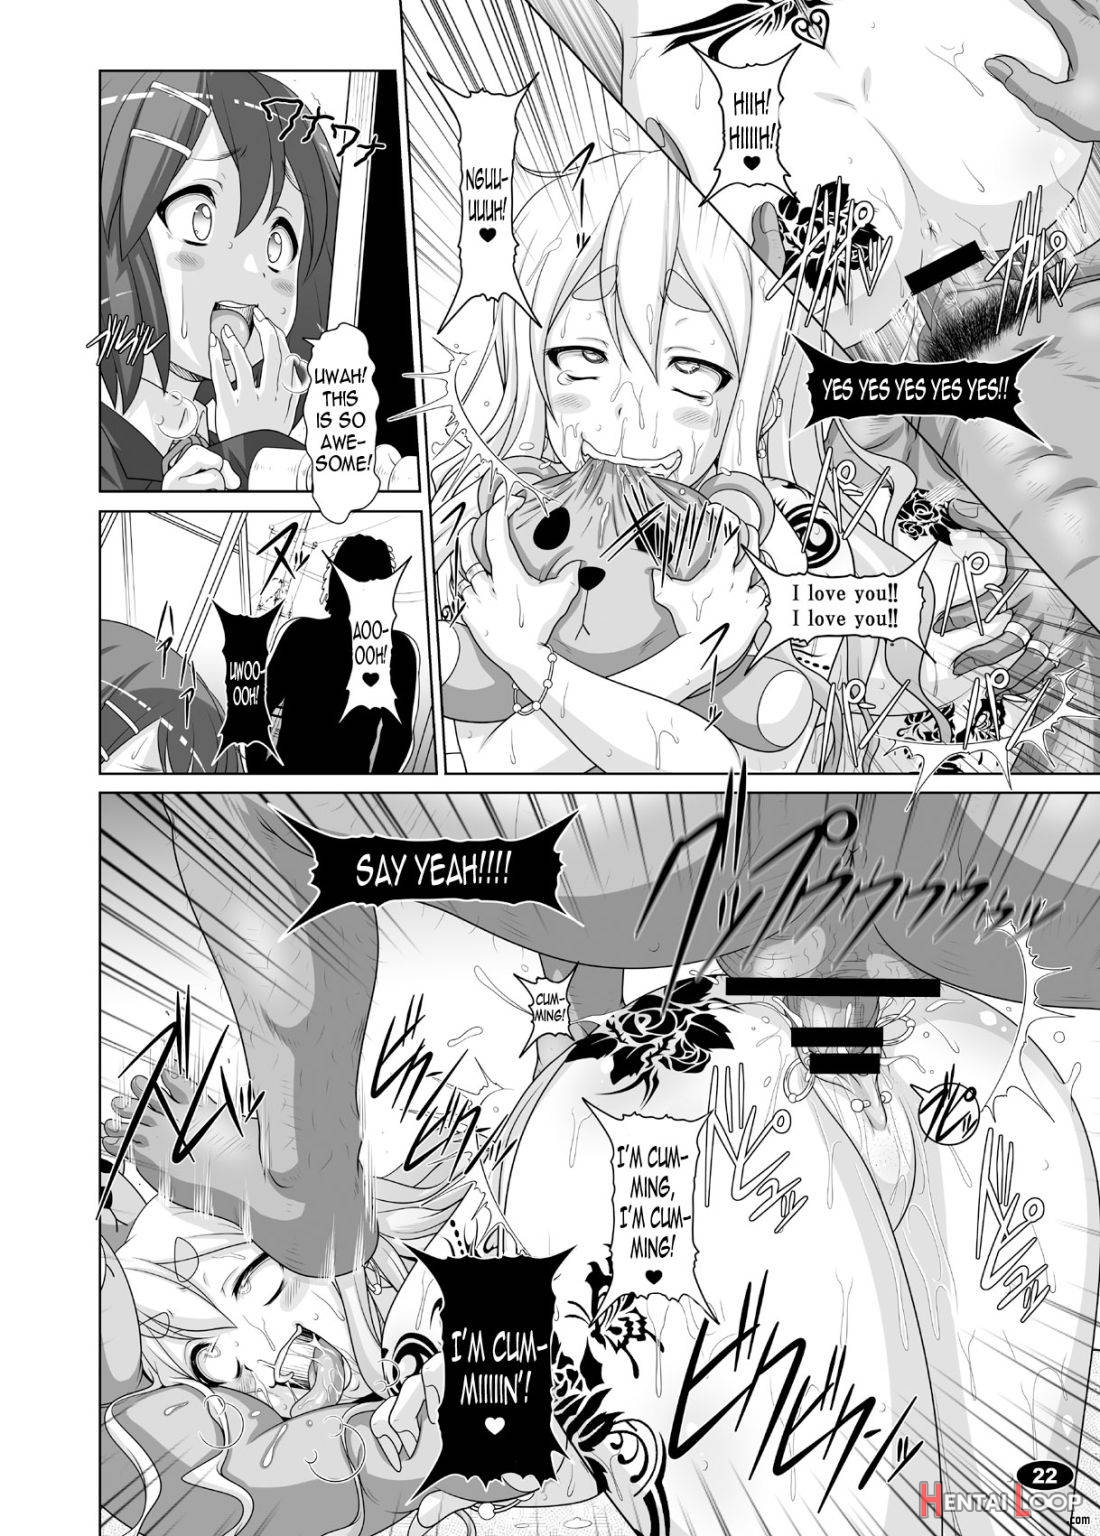 Kuroiro Jikan 2 page 19